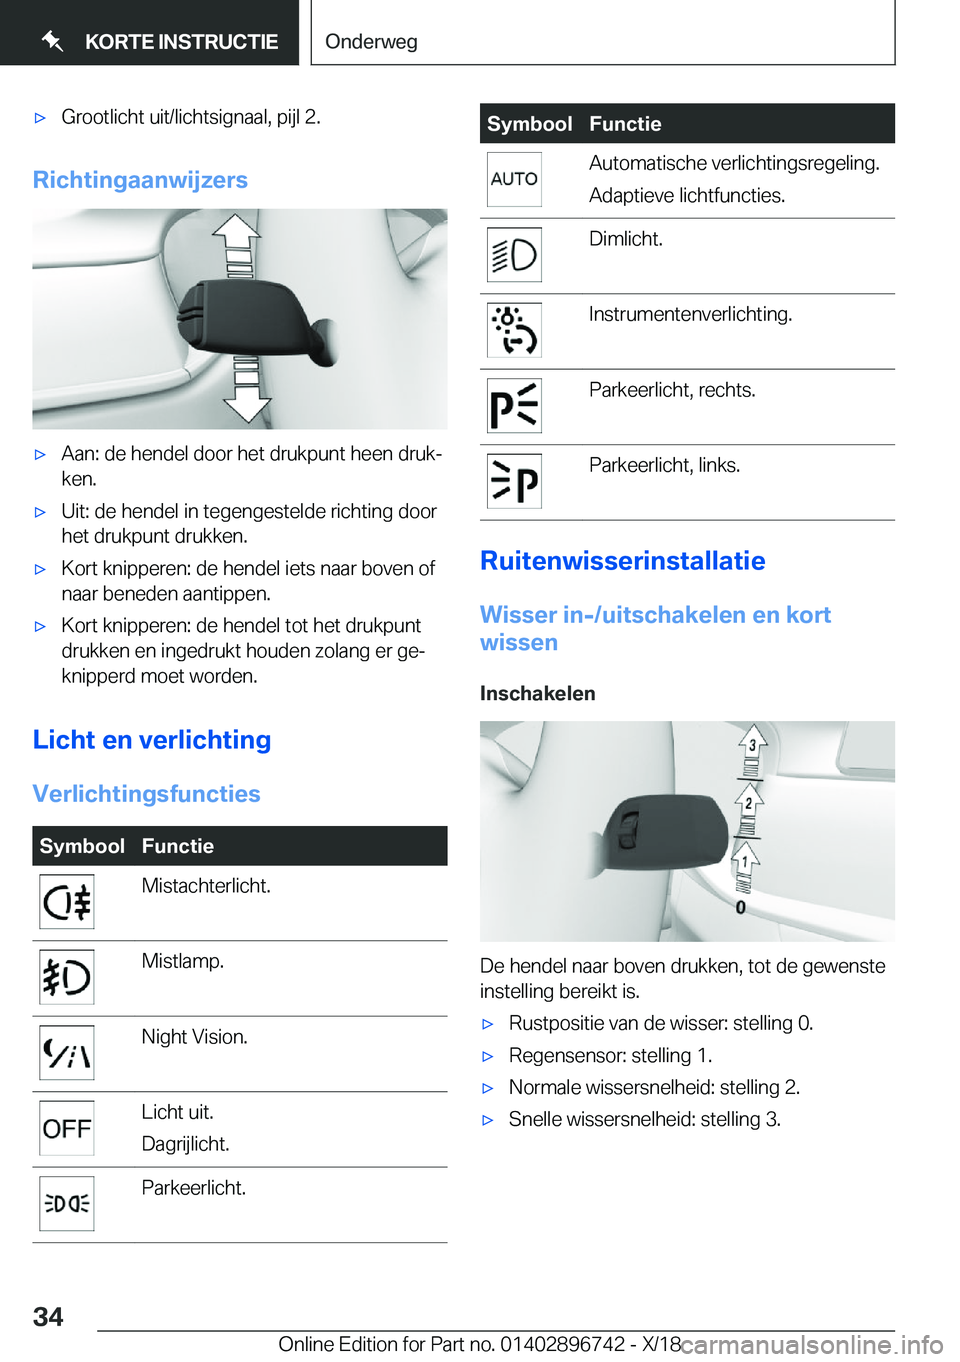 BMW X5 2019  Instructieboekjes (in Dutch) 'x�G�r�o�o�t�l�i�c�h�t��u�i�t�/�l�i�c�h�t�s�i�g�n�a�a�l�,��p�i�j�l��2�.
�R�i�c�h�t�i�n�g�a�a�n�w�i�j�z�e�r�s
'x�A�a�n�:��d�e��h�e�n�d�e�l��d�o�o�r��h�e�t��d�r�u�k�p�u�n�t��h�e�e�n��d